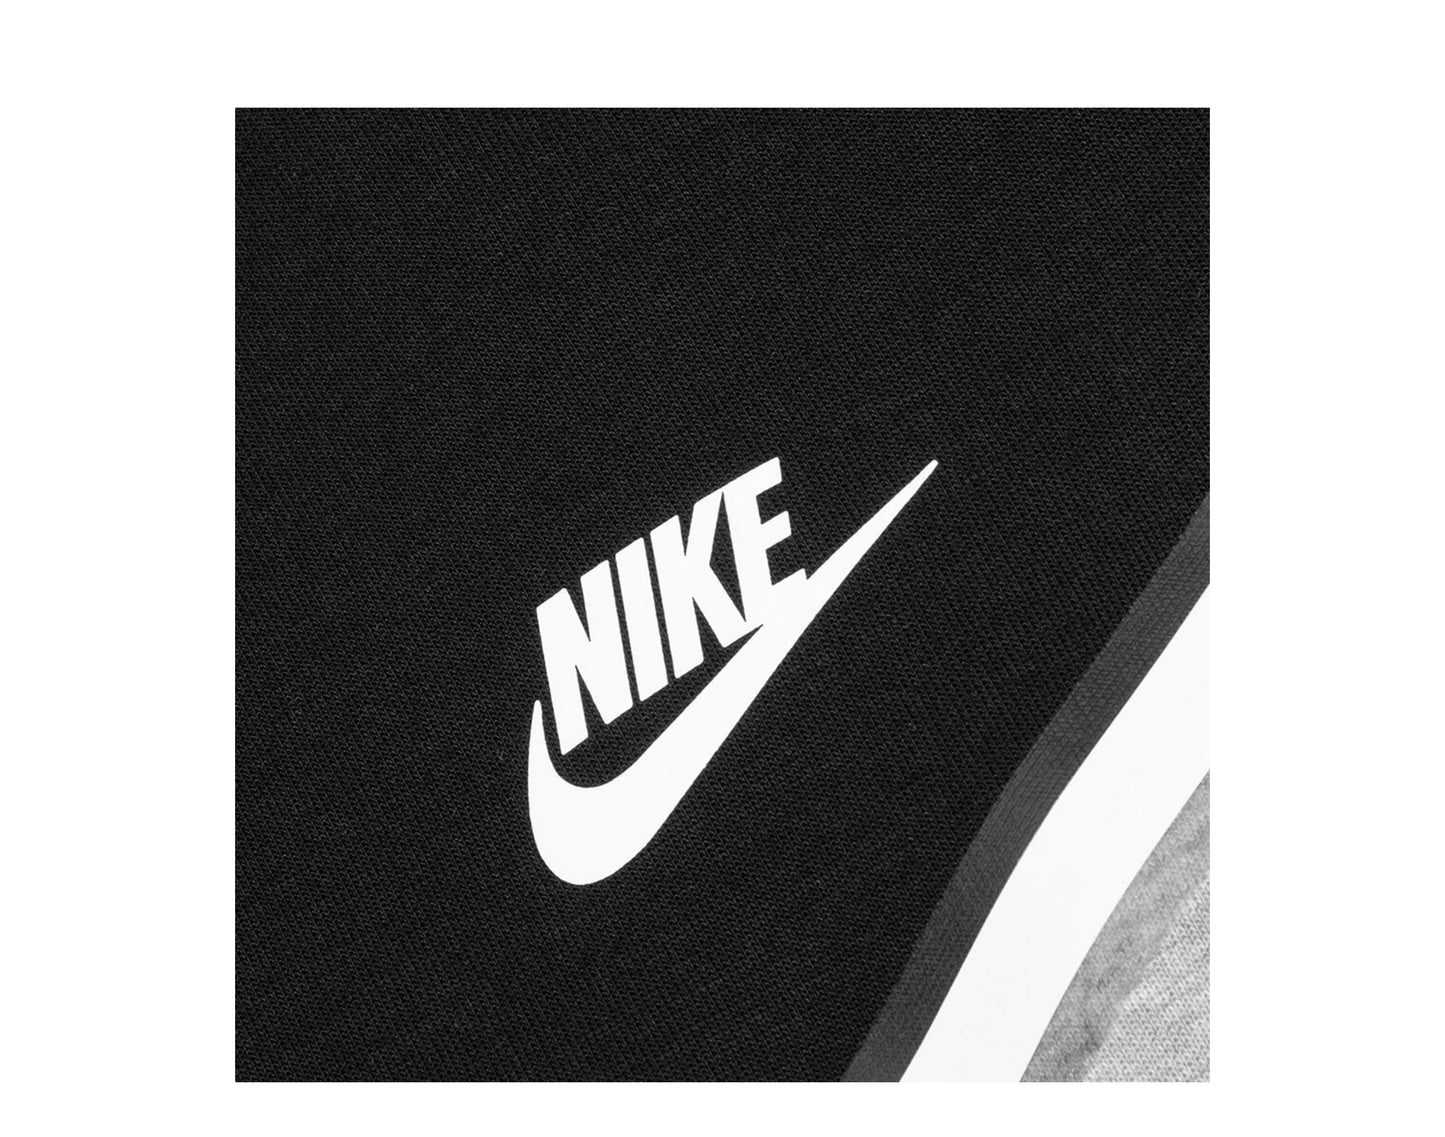 Nike Sportswear Tech Fleece Men's Hoodie